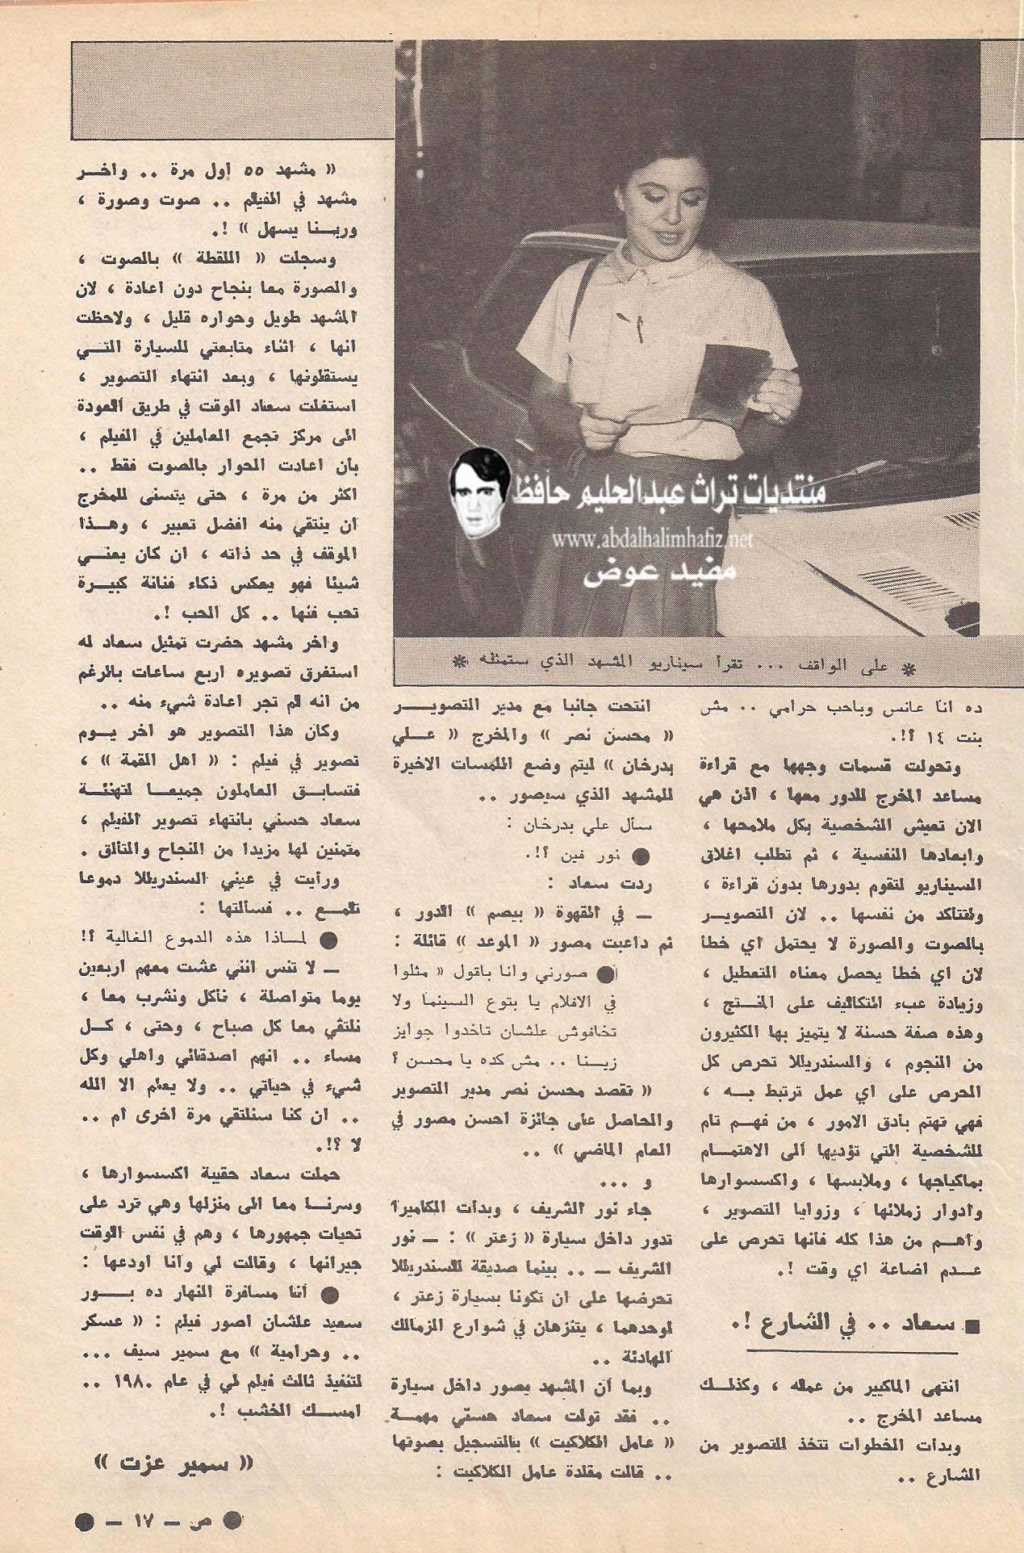 القمة - مقال صحفي : سعاد حسني والدموع في عينيها عندما ودّعت أهل القمة 1981 م 499